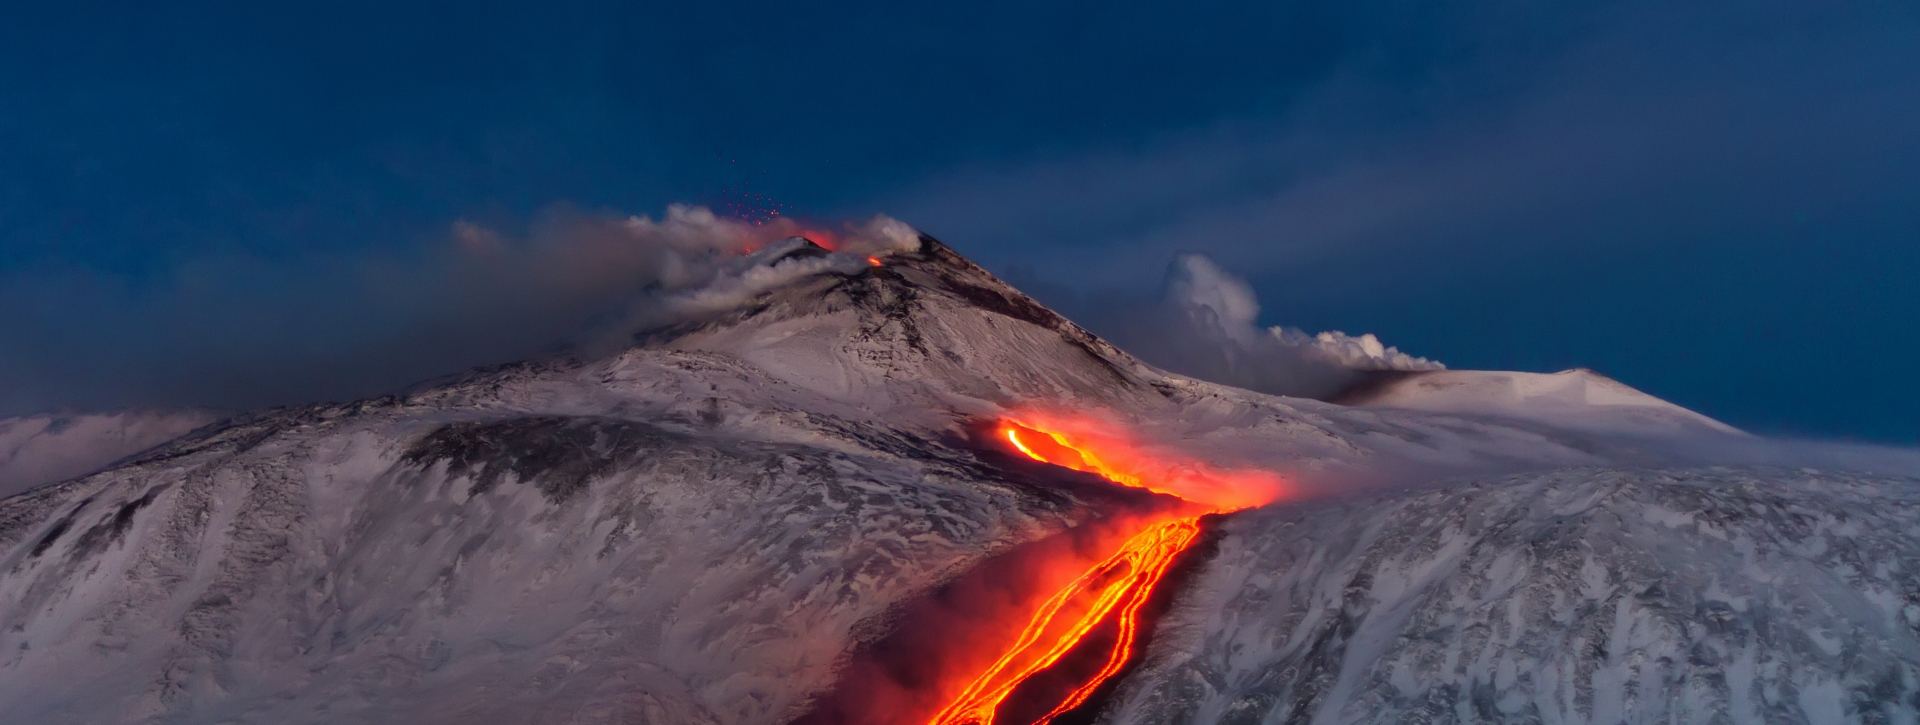 Vedere l’Etna in eruzione